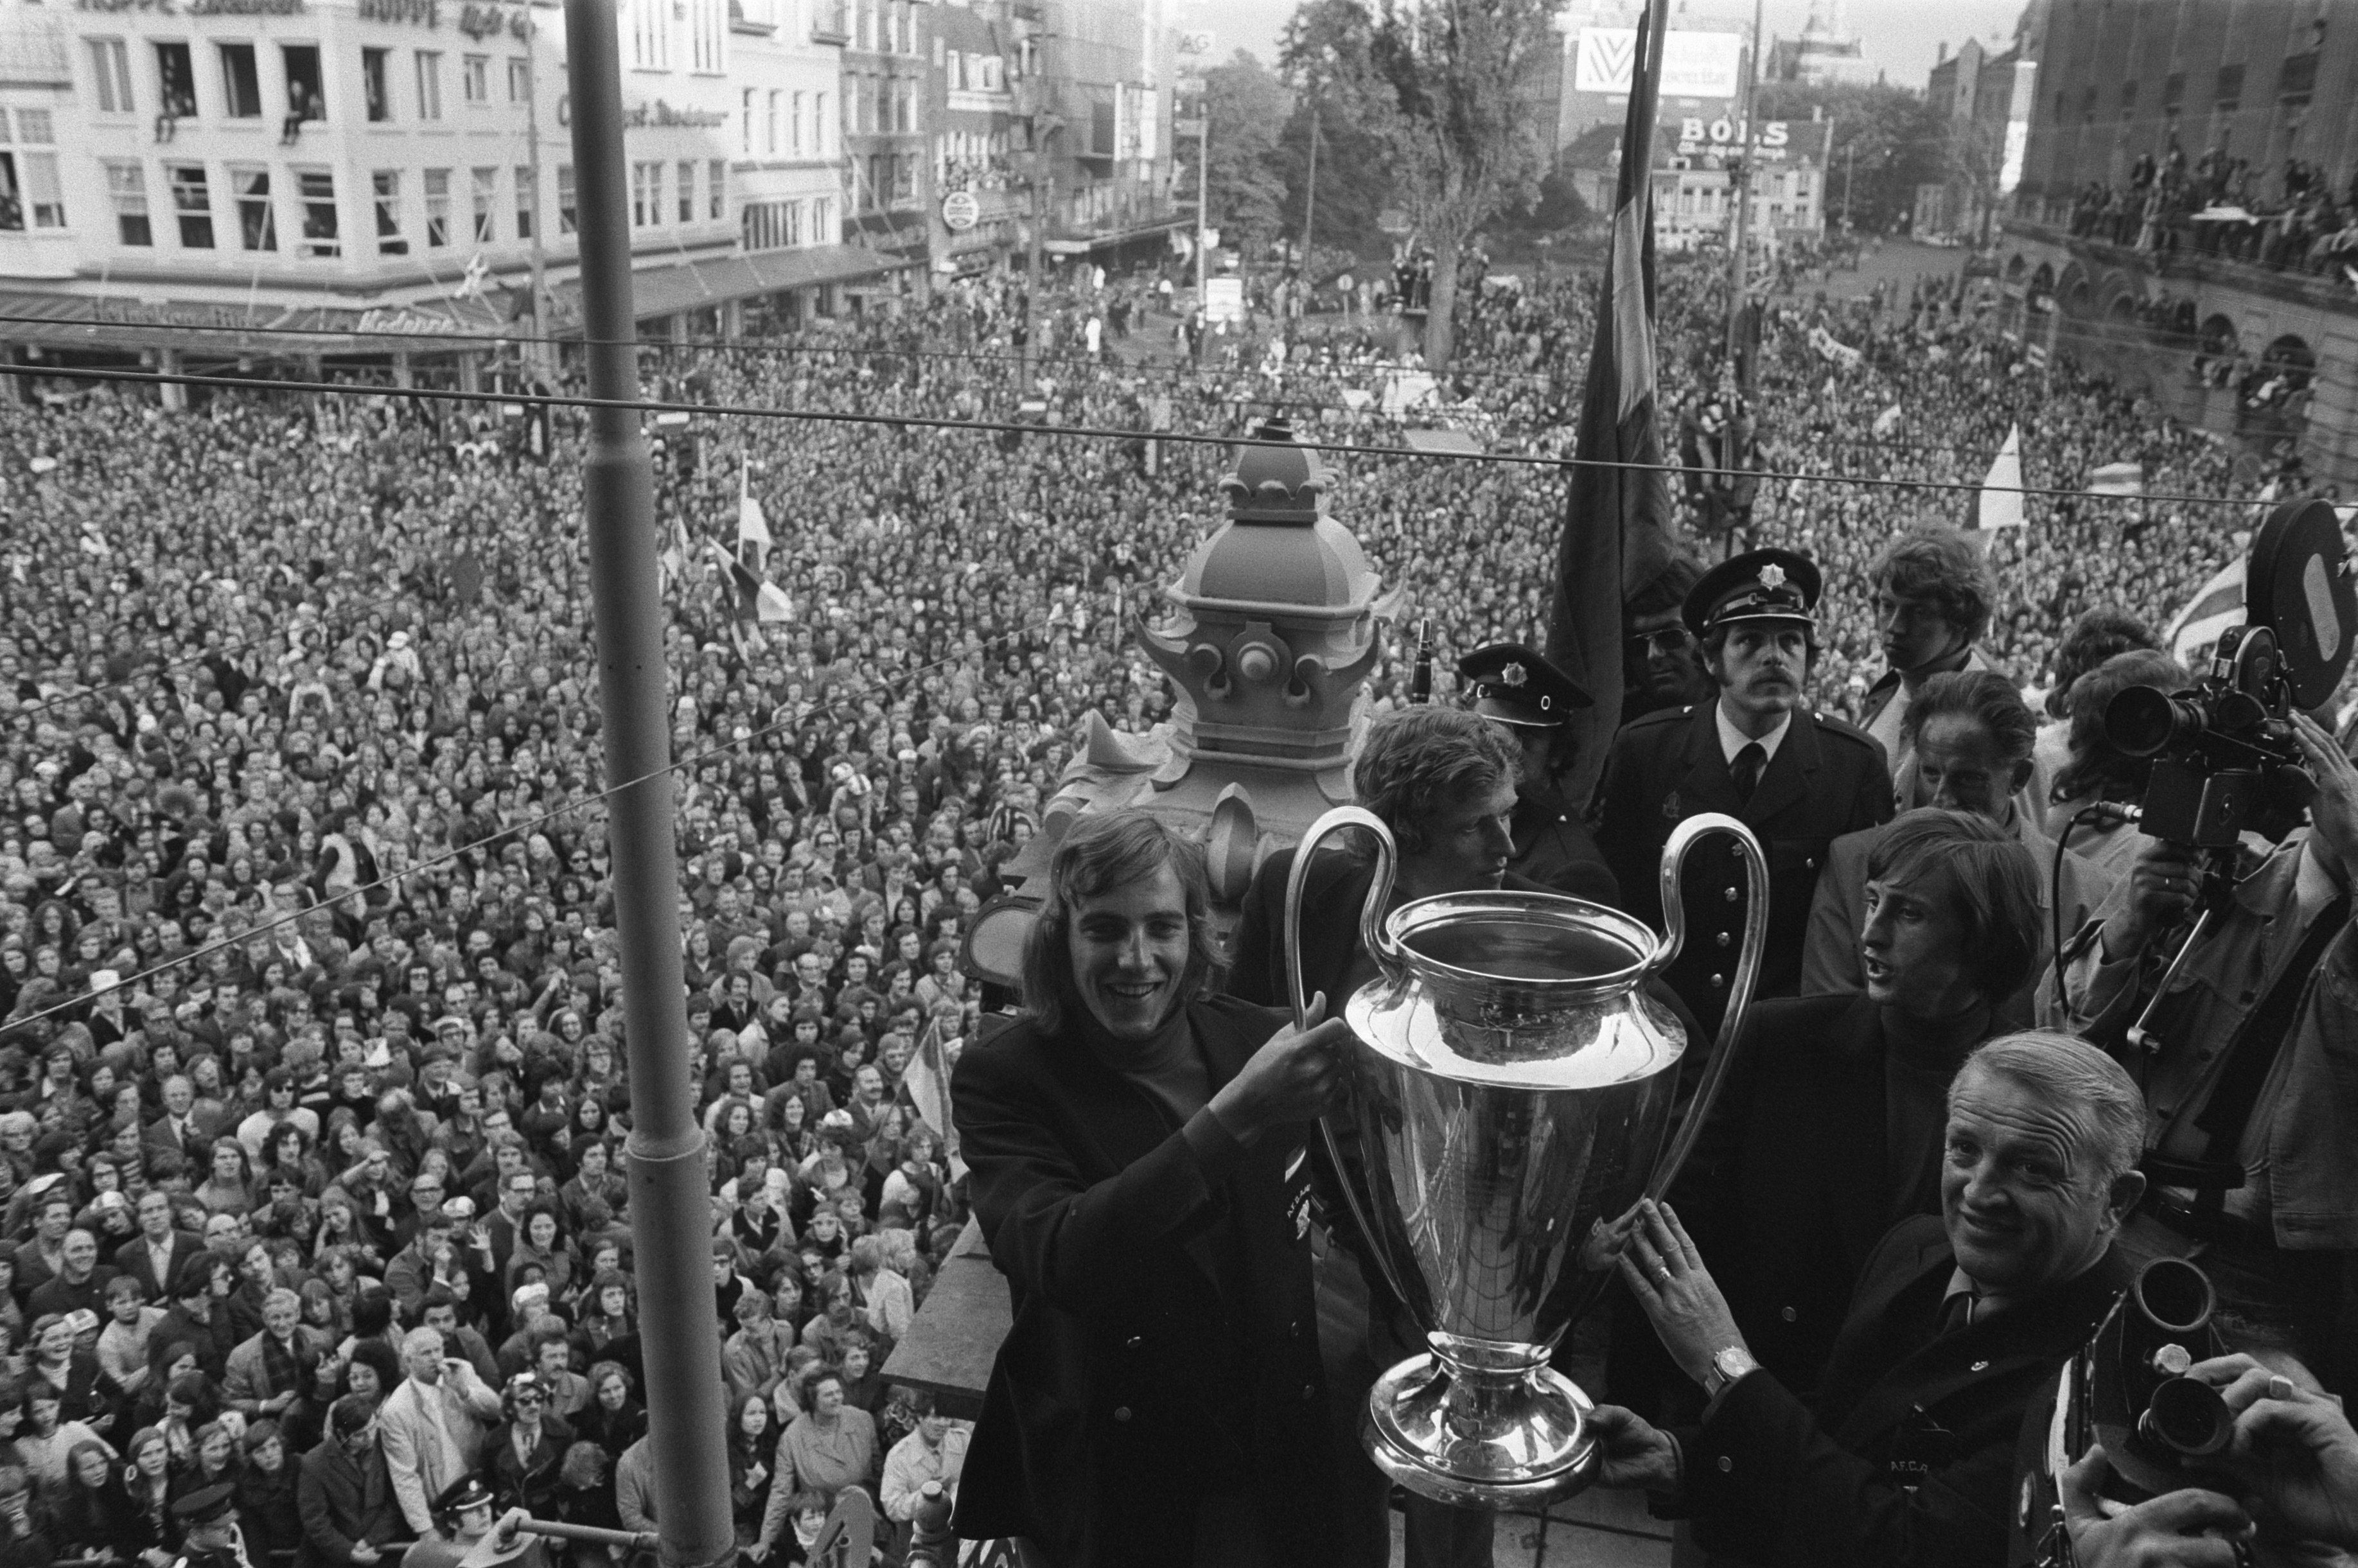 File:Ajax-spelers en burgemeester Ivo Samkalden met de cup tijdens de huldiging, Bestanddeelnr 925-6410.jpg - Wikimedia Commons